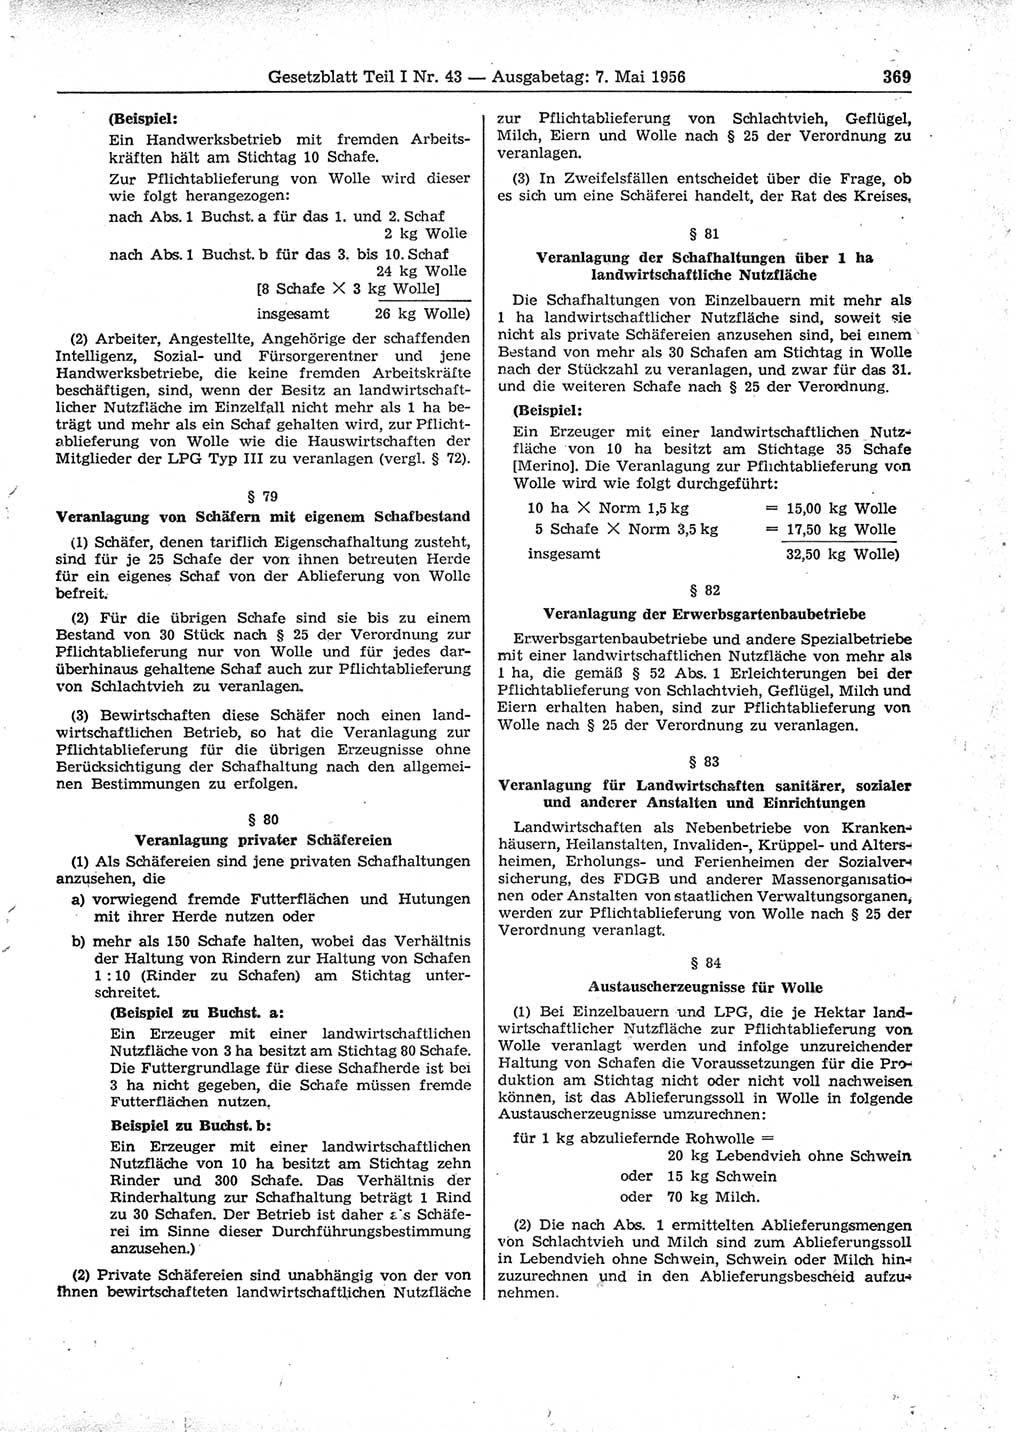 Gesetzblatt (GBl.) der Deutschen Demokratischen Republik (DDR) Teil Ⅰ 1956, Seite 369 (GBl. DDR Ⅰ 1956, S. 369)